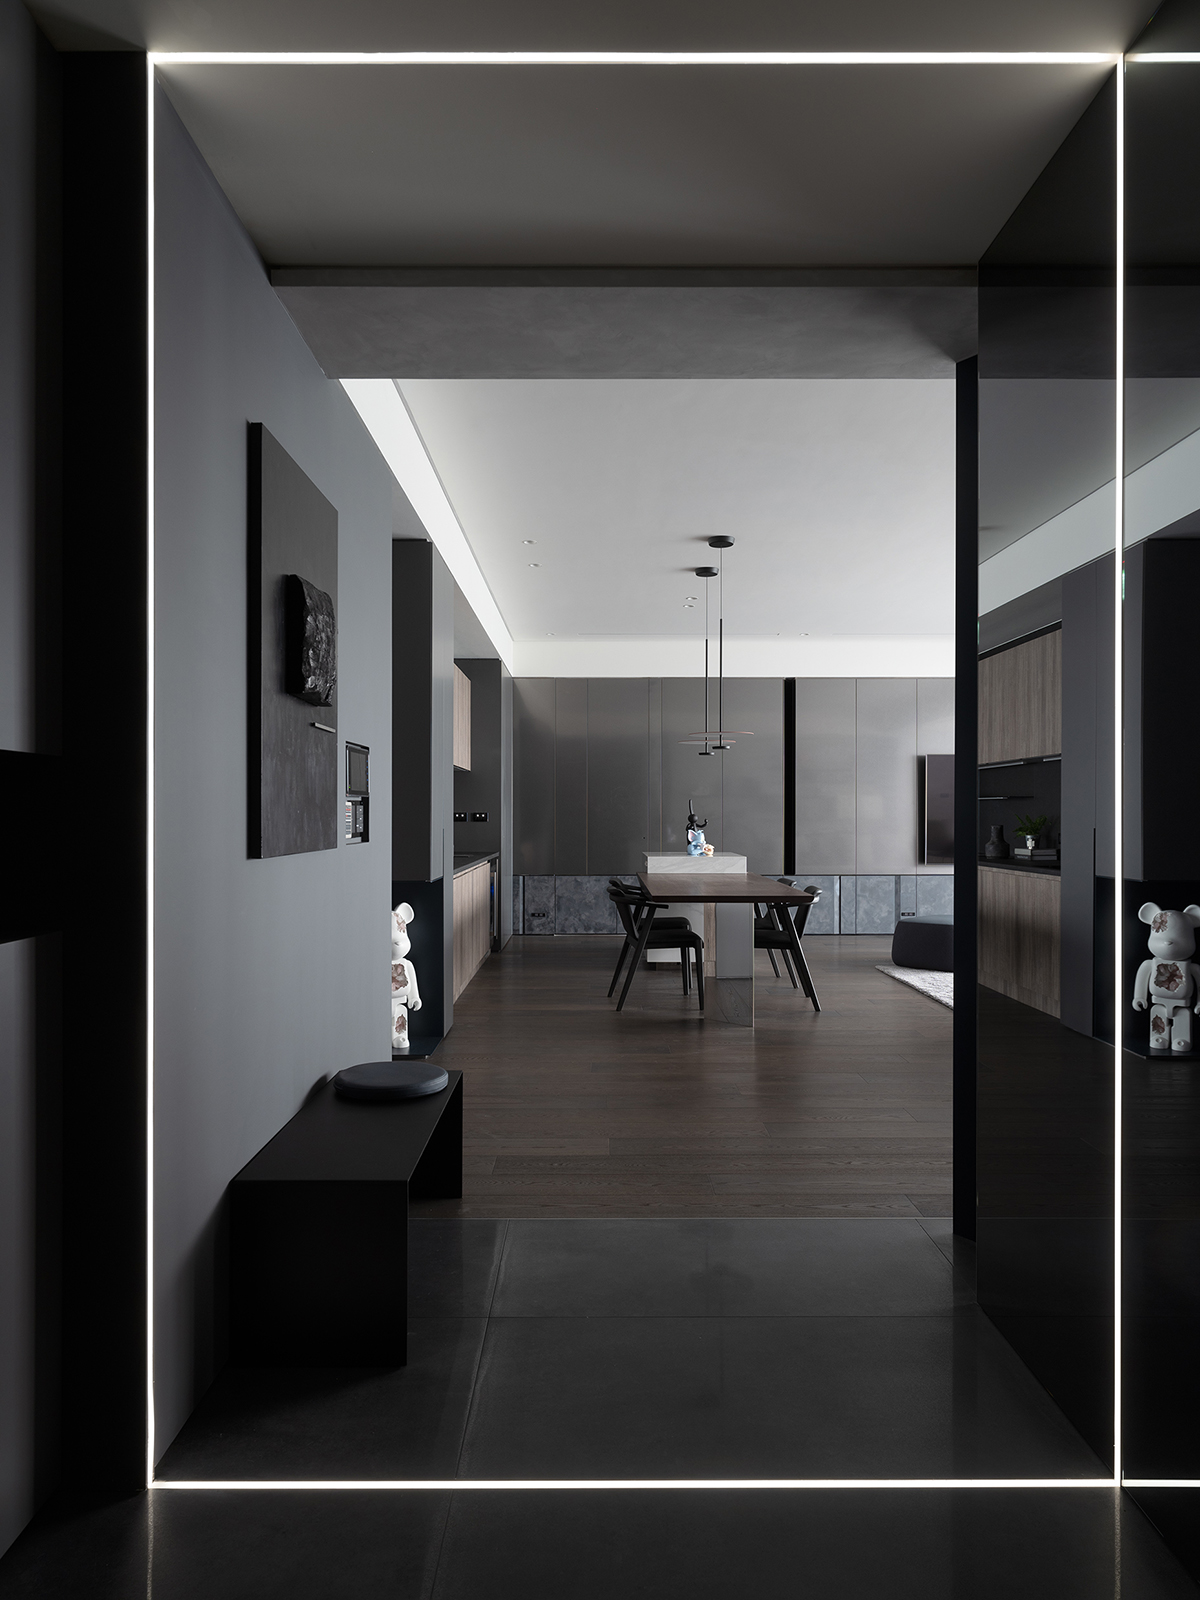 Lối vào thể hiện ngay phong cách thiết kế của căn hộ, với sàn nhà lát đá xám đậm, băng ghế nghỉ chân màu đen tuyền cùng tấm gương màu xám tích hợp đèn chiếu sáng cho cảm giác không gian như rộng ra gấp đôi.